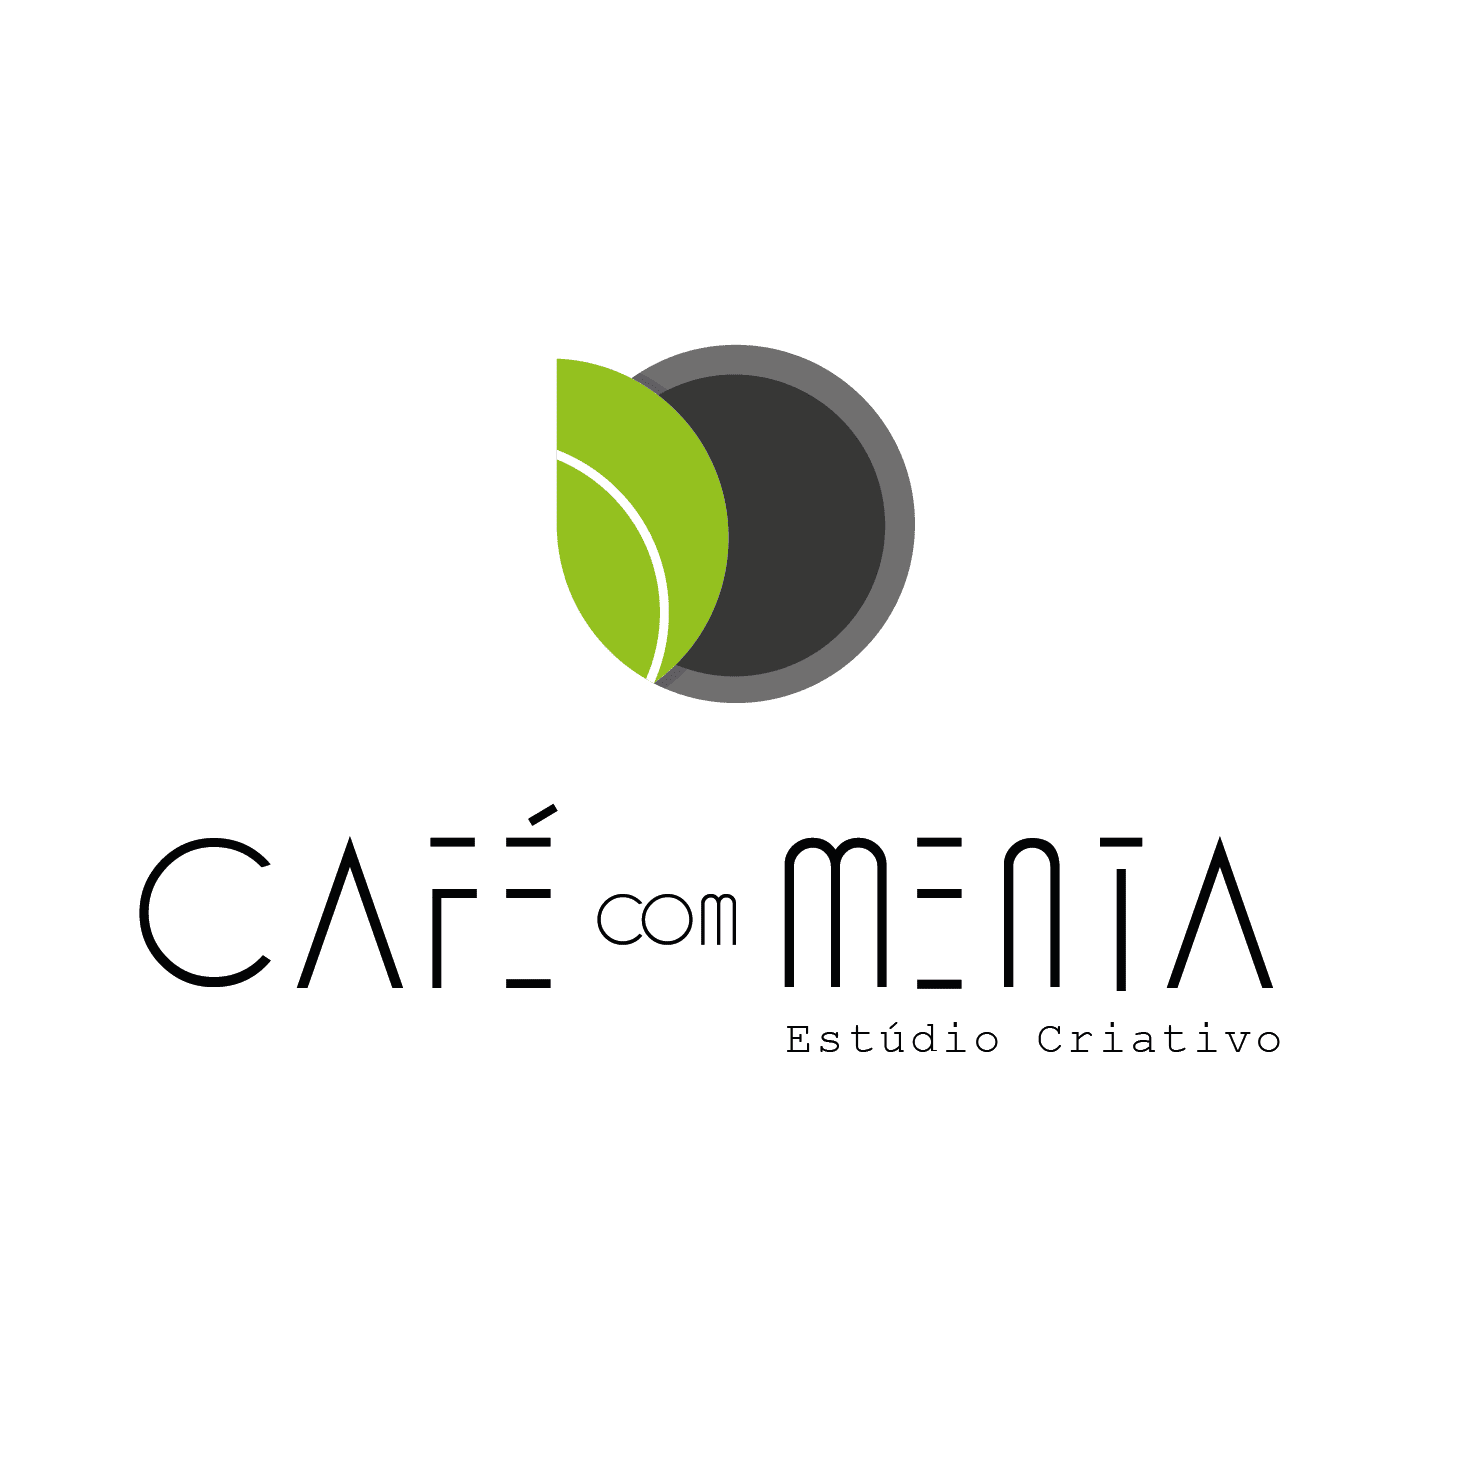 Café com Menta